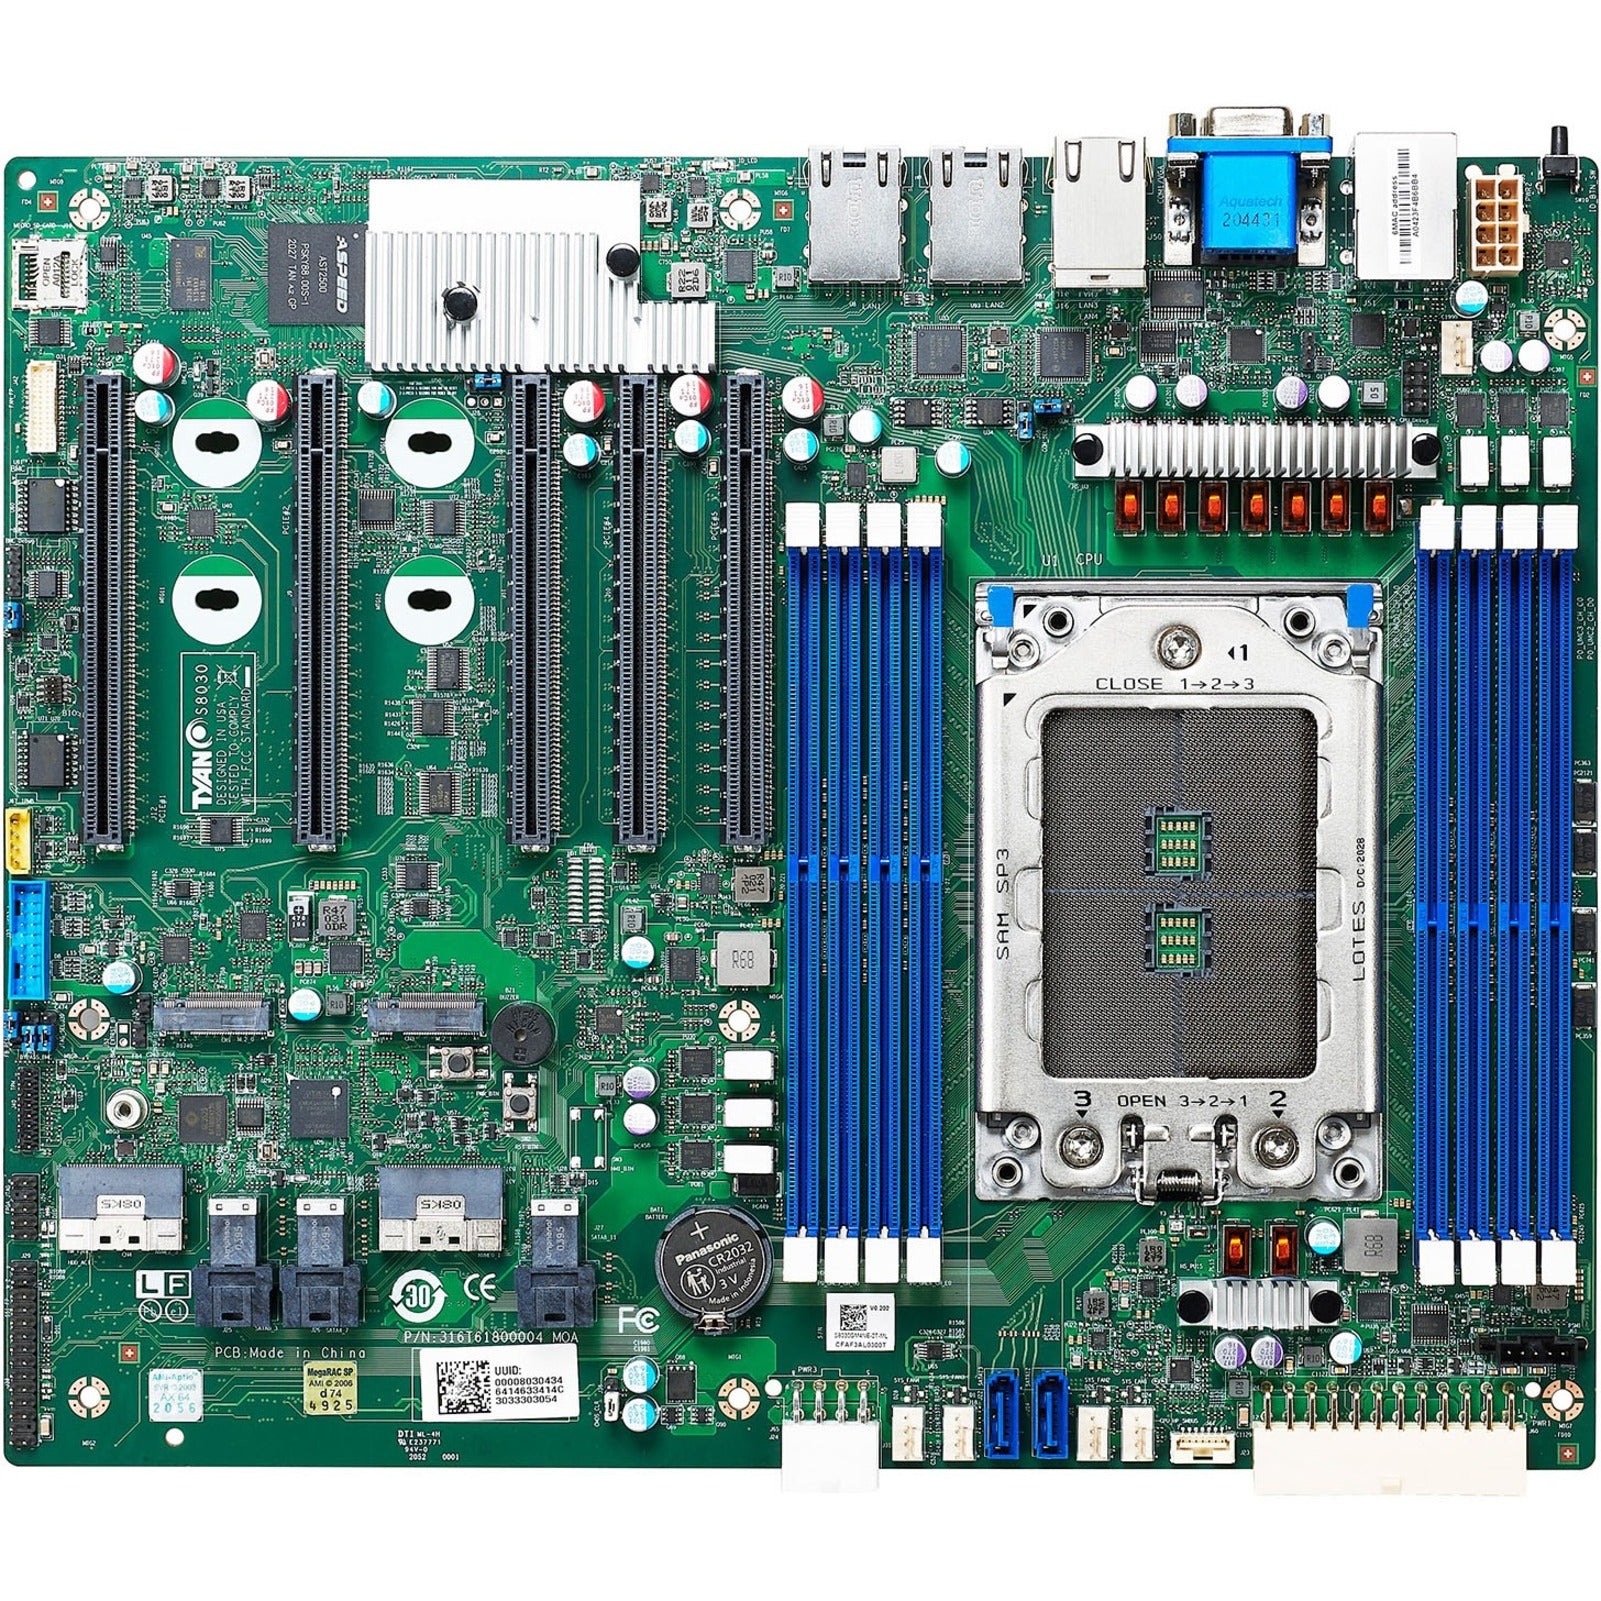 Tyan S8030GM2NE Tomcat HX S8030 AMD EPYC 7002 SP3 DDR4 512GB PCIE SATA USB VGA ATX Retail